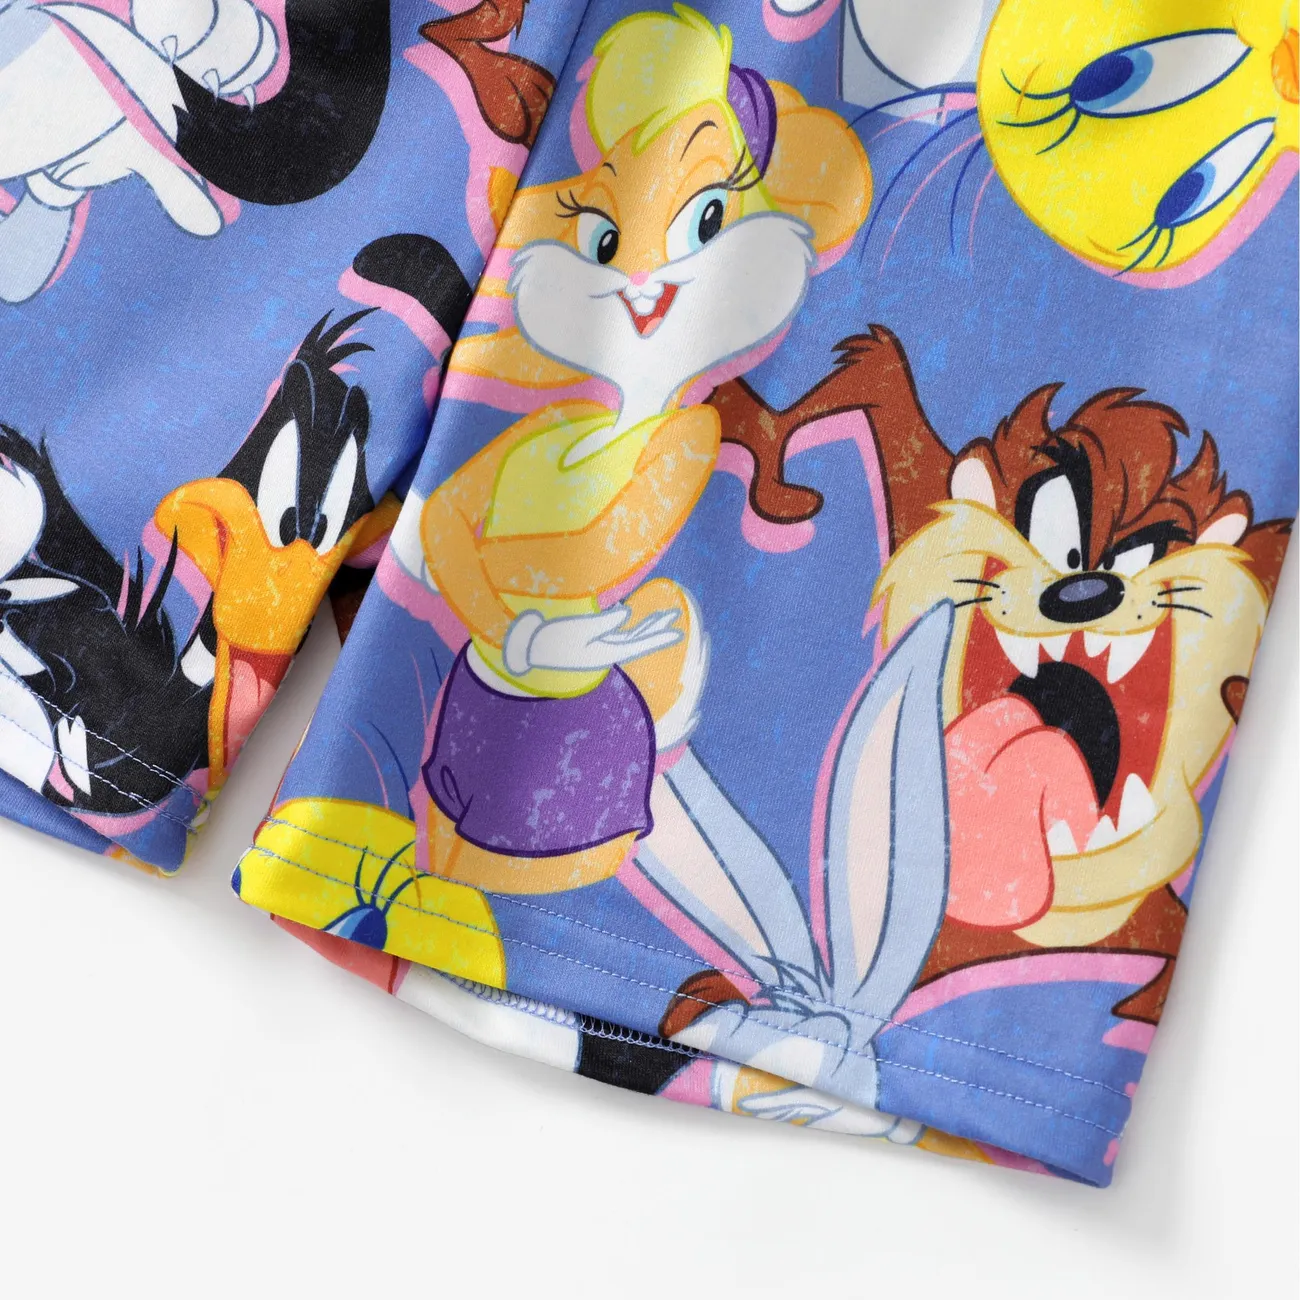 Looney Tunes 2 unidades Unisex Infantil Conjuntos Multicolor big image 1